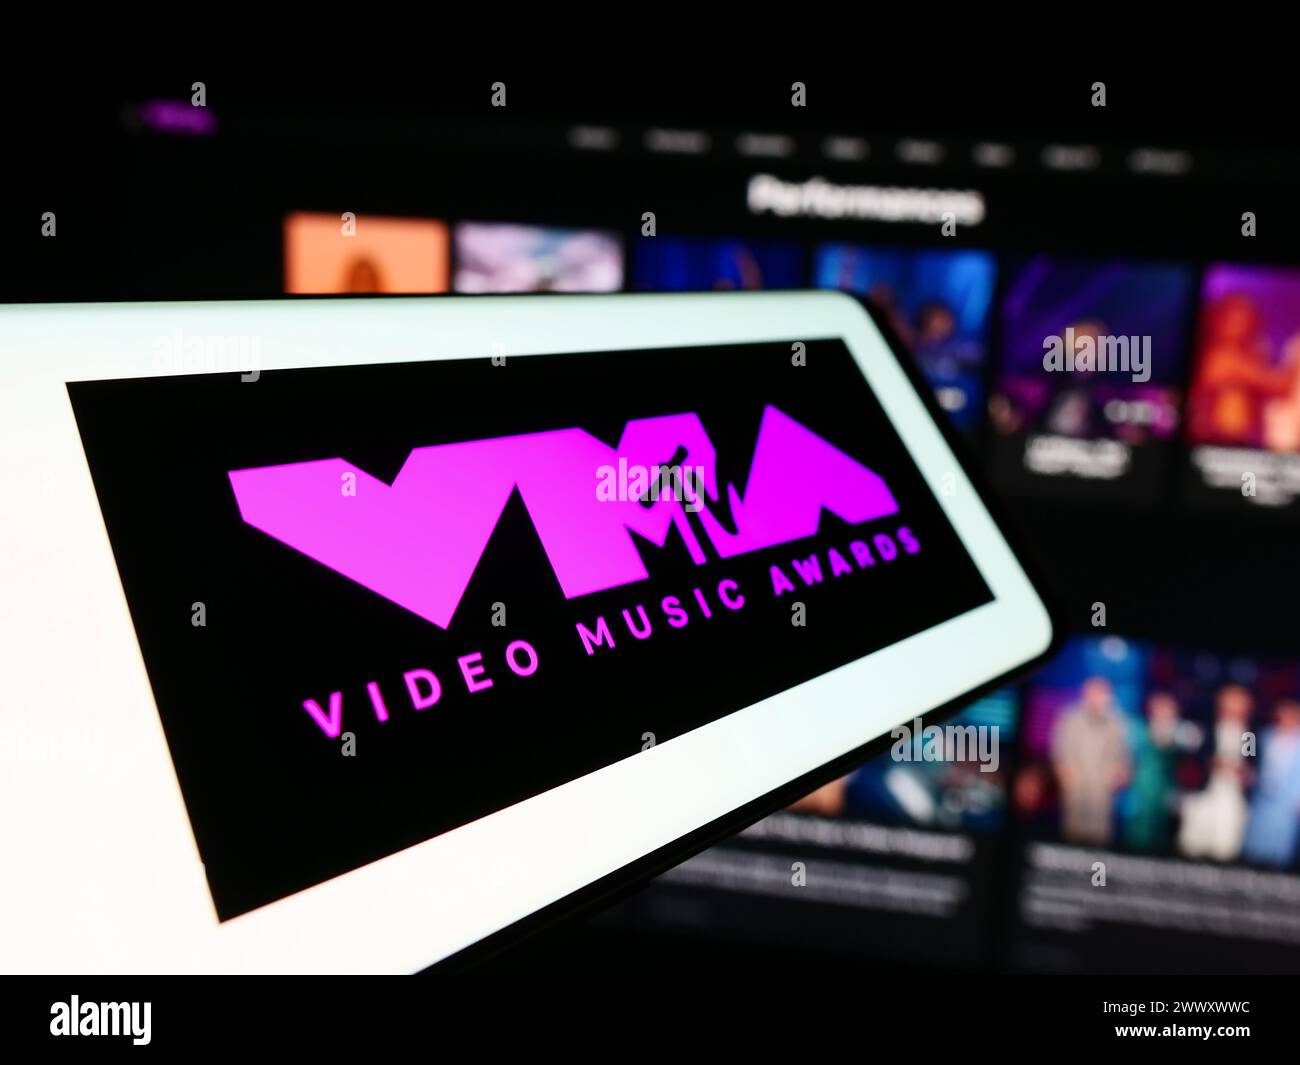 Téléphone portable avec logo de l'émission MTV Video Music Awards (VMA) devant le site Web. Mettez l'accent sur le centre-gauche de l'écran du téléphone. Banque D'Images